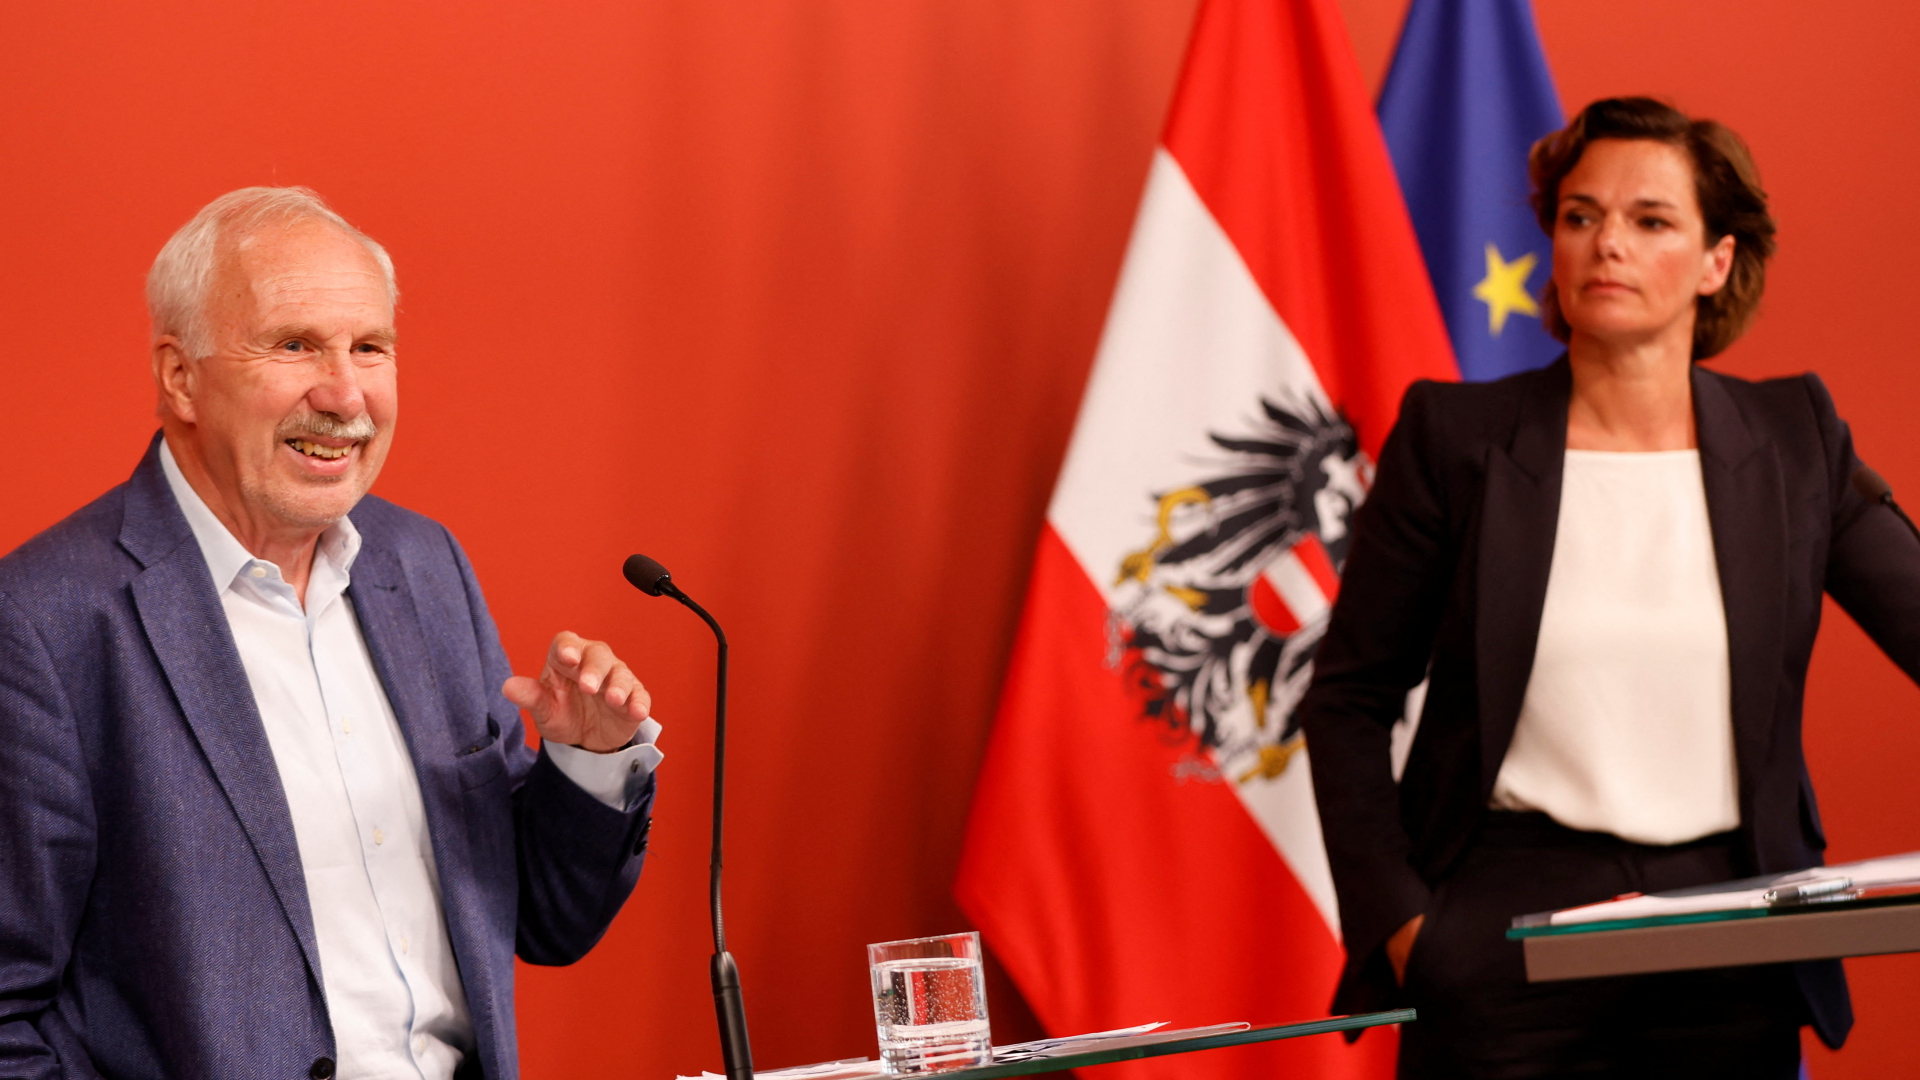 Ökonom Ewald Nowotny und SPÖ-Chefin Pamela Rendi-Wagner bei einer Pressekonferenz zur hohen Inflation in Österreich.